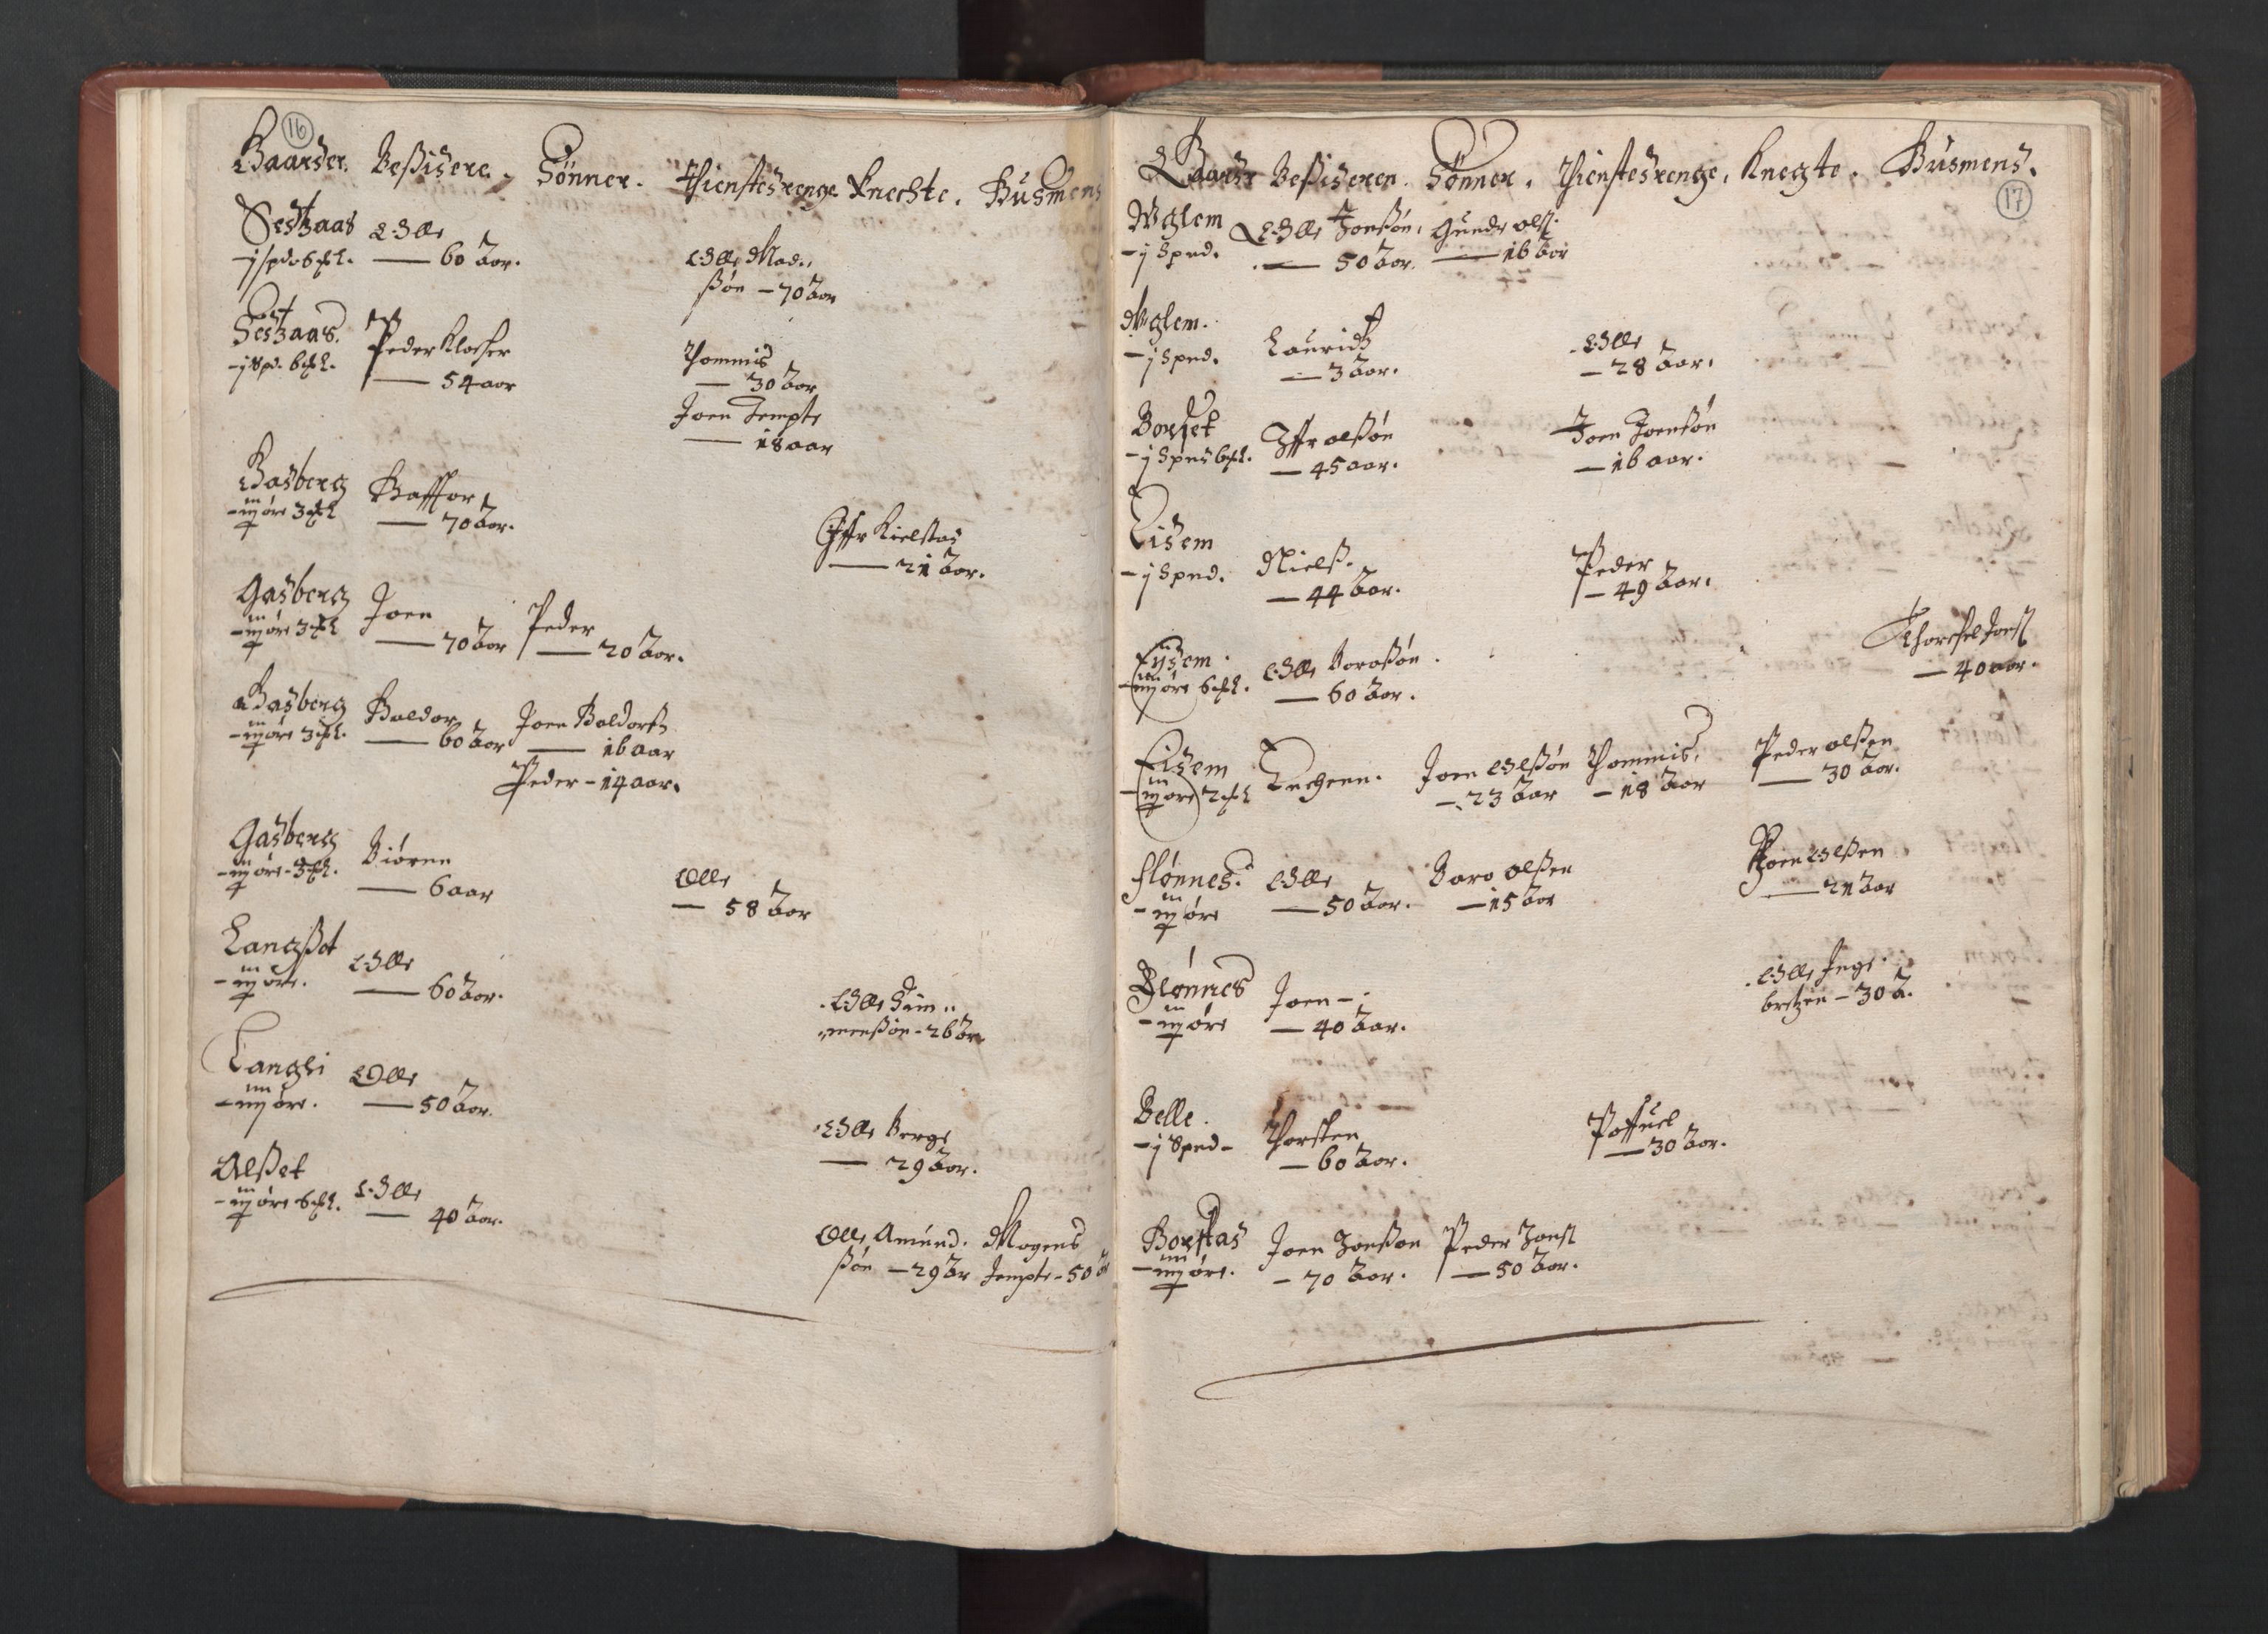 RA, Bailiff's Census 1664-1666, no. 19: Fosen fogderi, Inderøy fogderi, Selbu fogderi, Namdal fogderi and Stjørdal fogderi, 1664-1665, p. 16-17